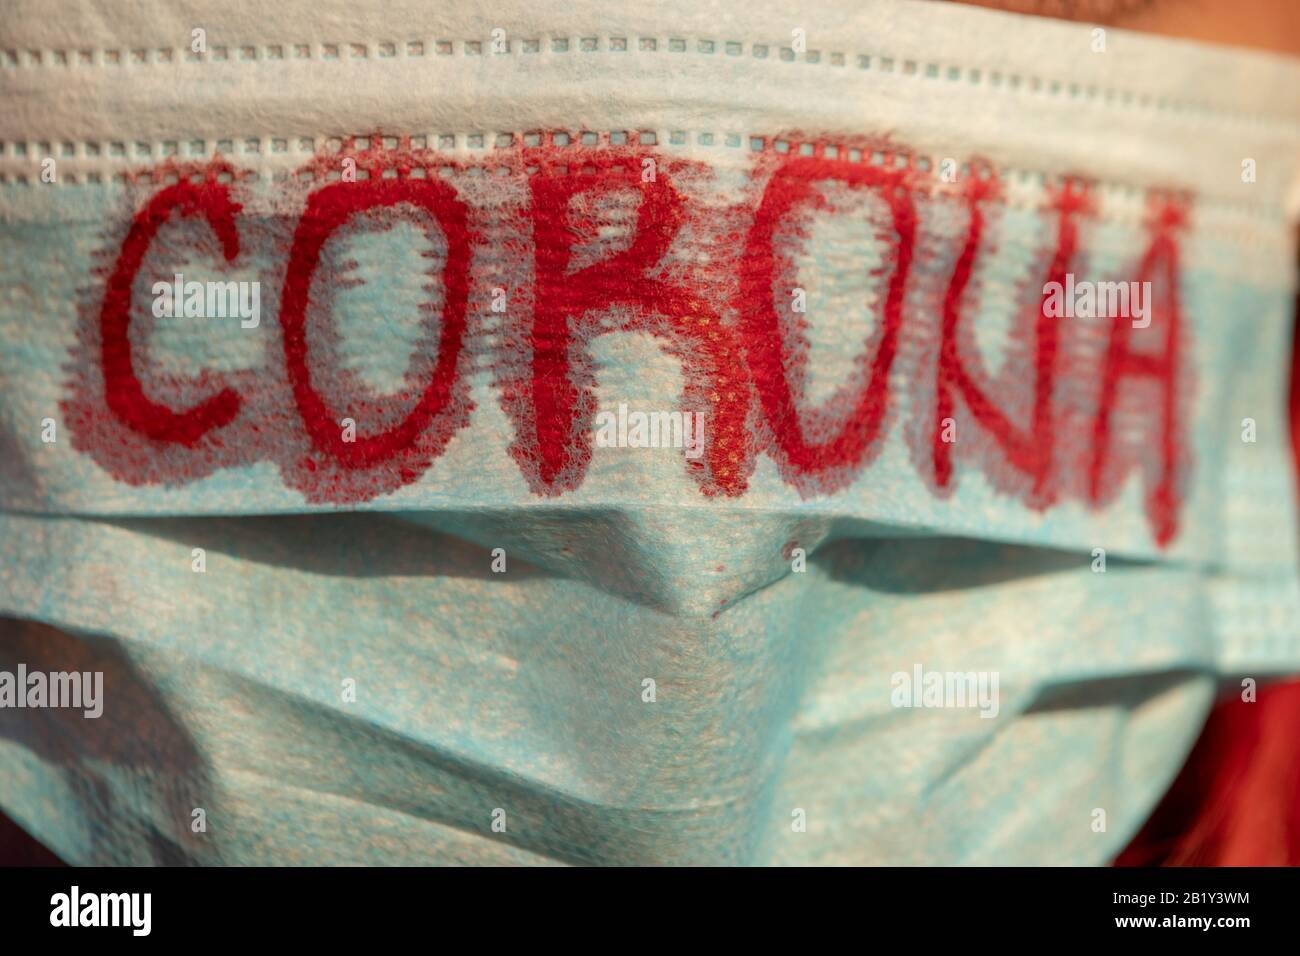 Corona scritta sulla maschera. Corona virus, polmonite virale a Wuhan, Cina. Assistenza sanitaria e concetto medico. Foto Stock